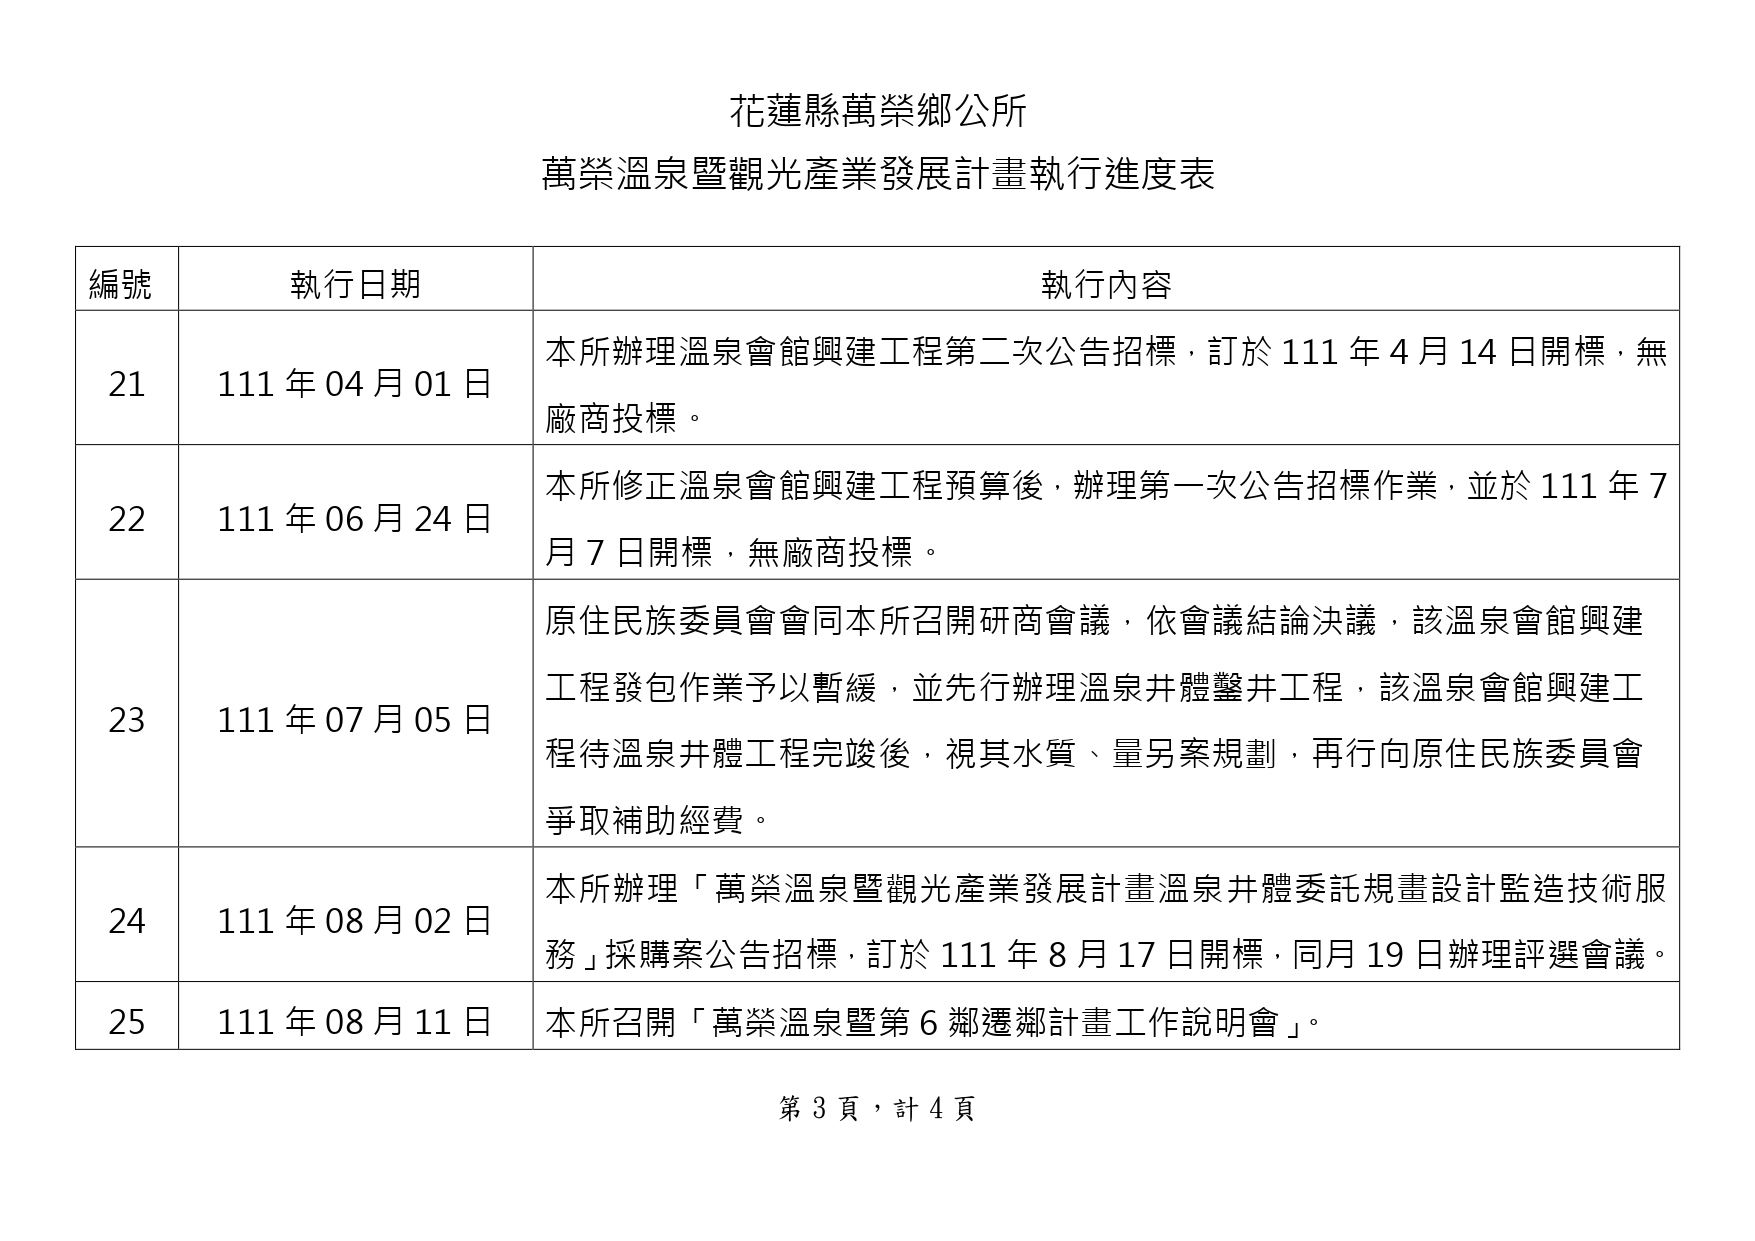 萬榮溫泉計畫執行進度表-網路公告版112.01.03 - 給行政課_page-0003